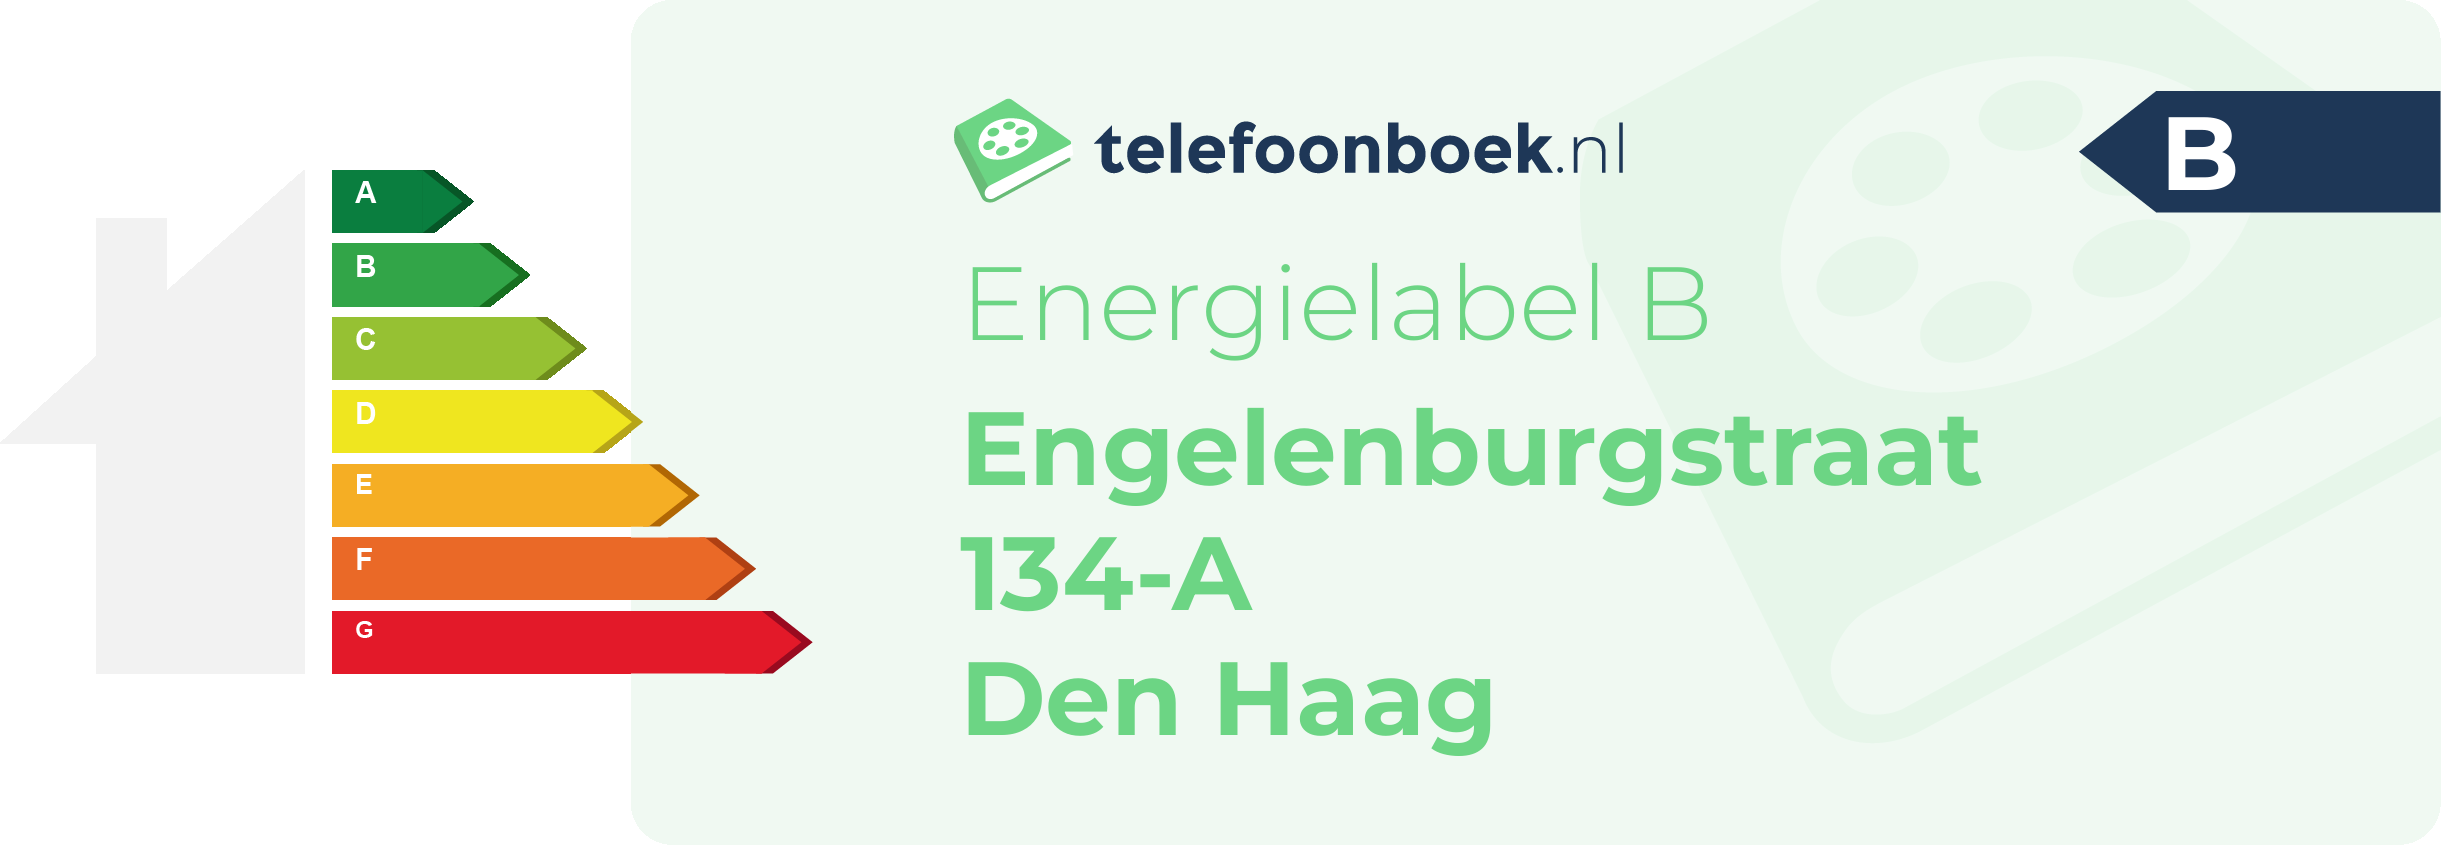 Energielabel Engelenburgstraat 134-A Den Haag